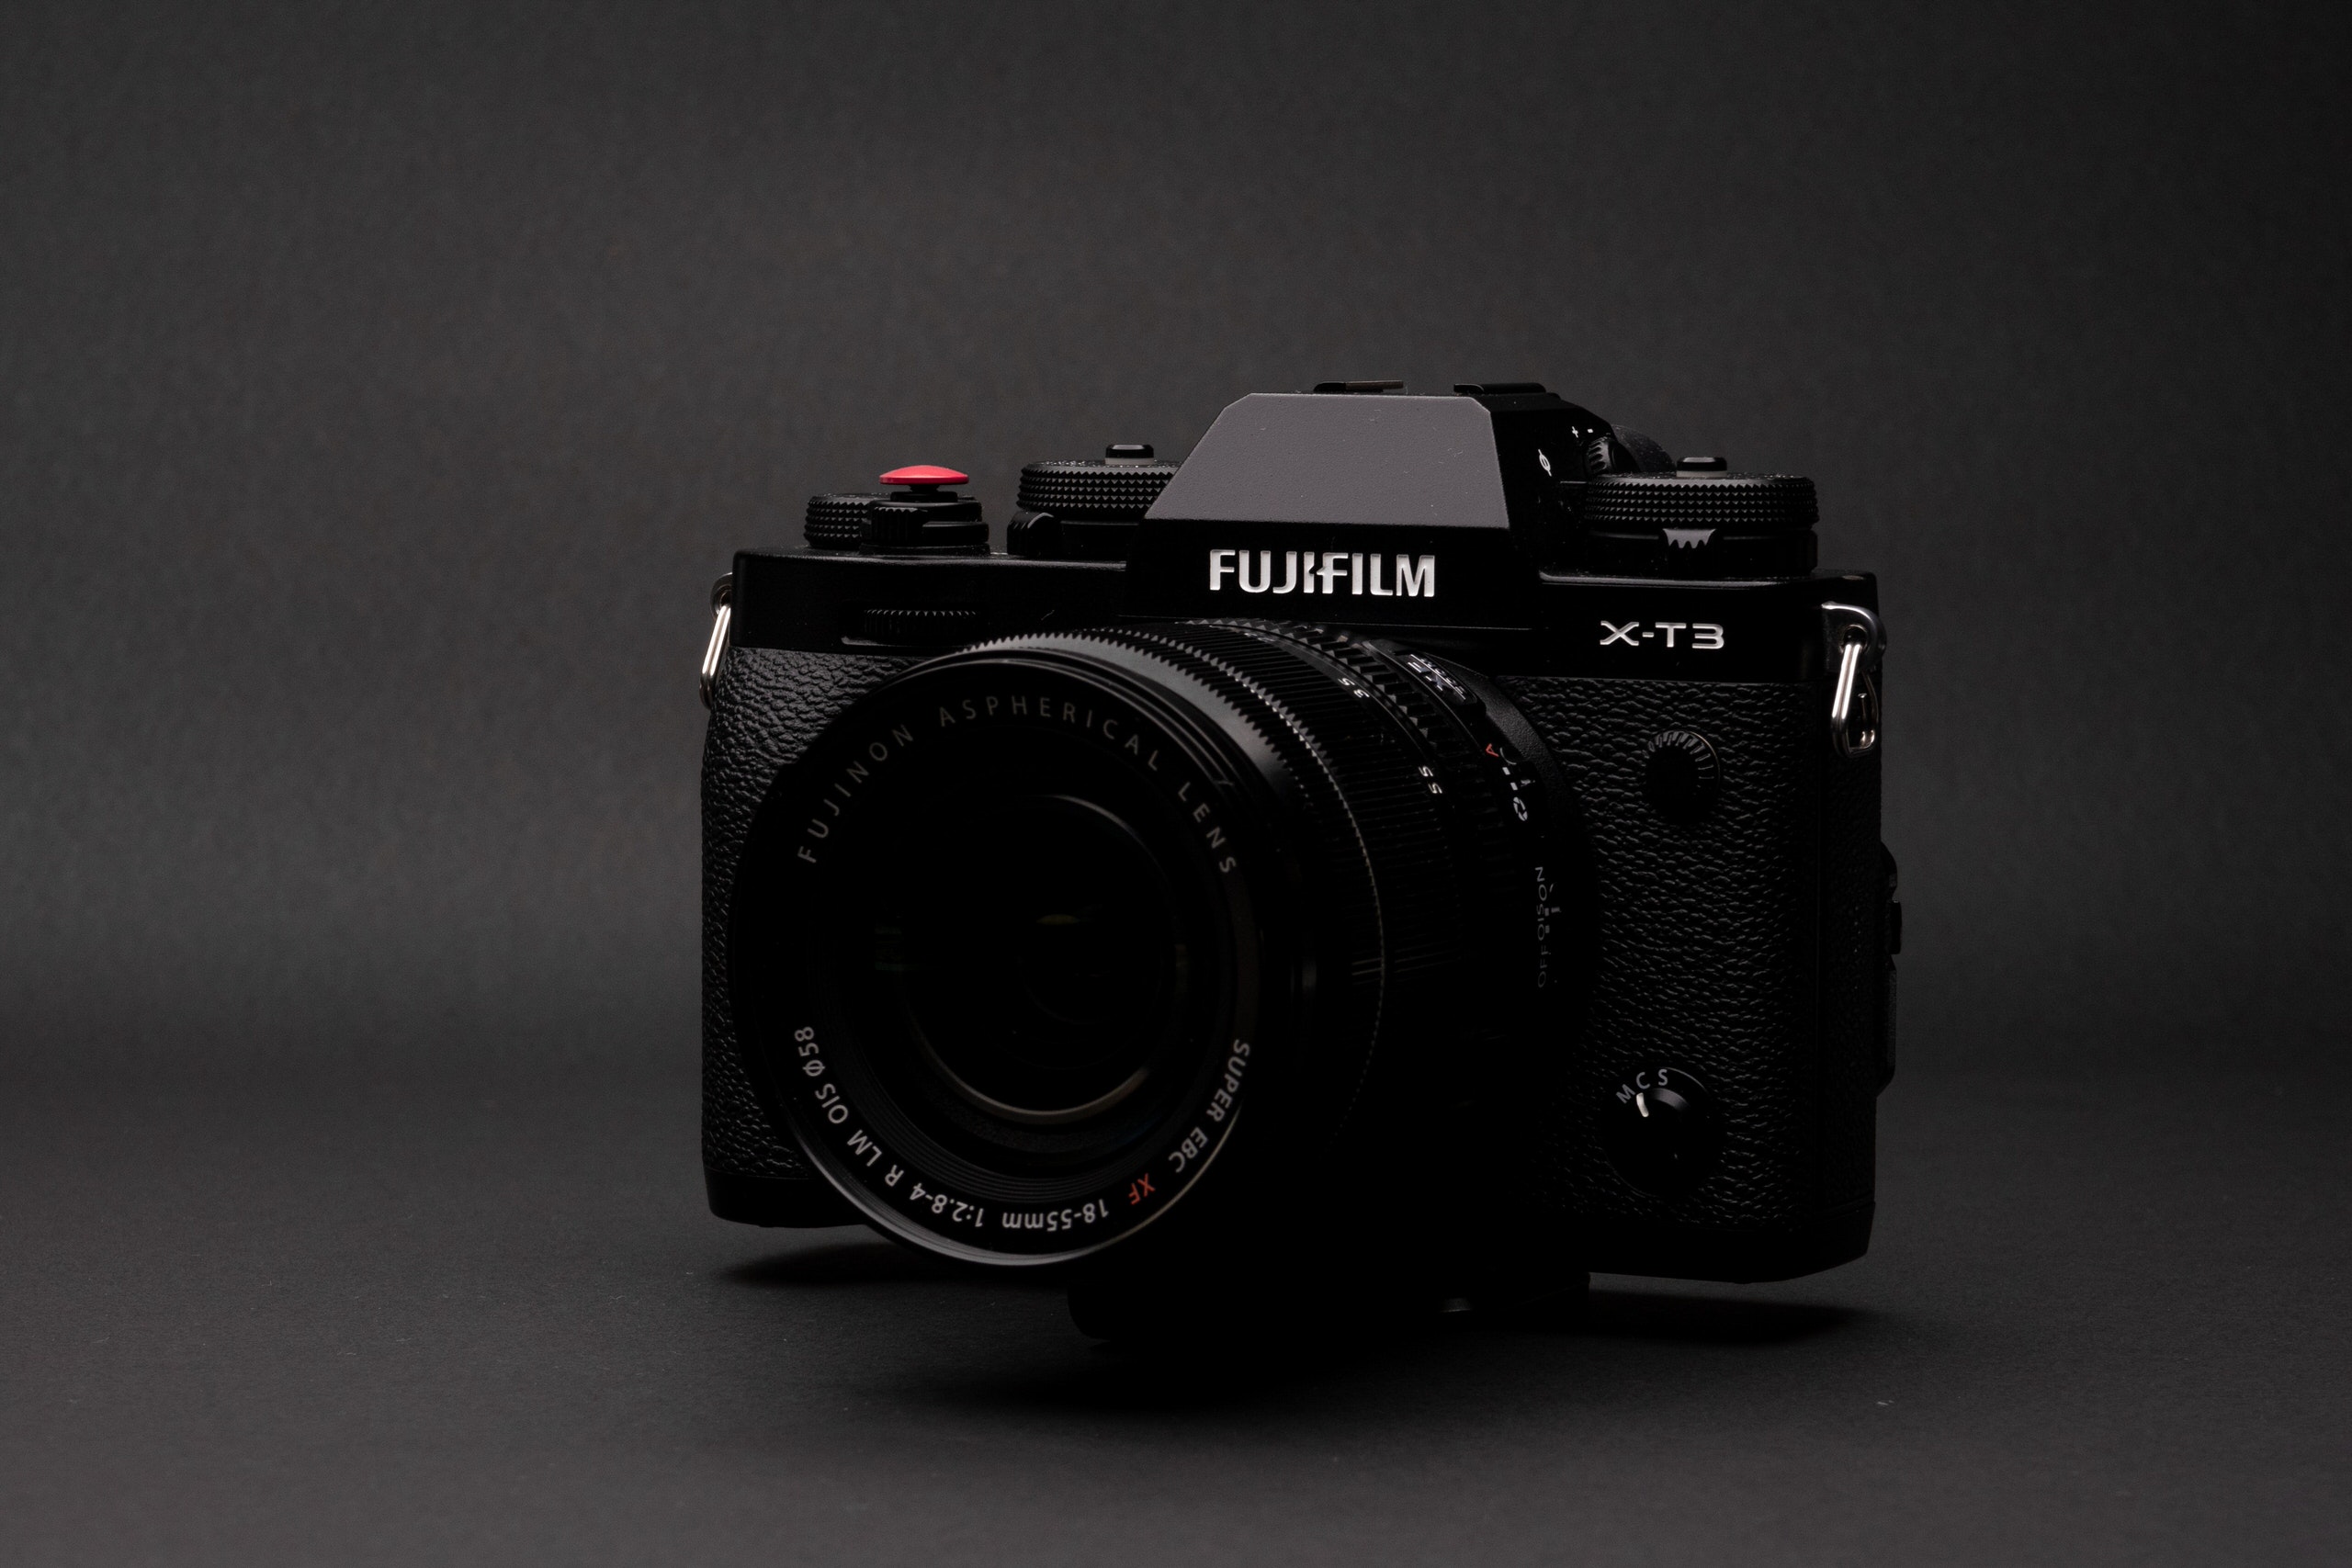 Đã có cập nhật firmware 4.0 cho Fujifilm X-T3 và không có giả lập màu Classic Negative